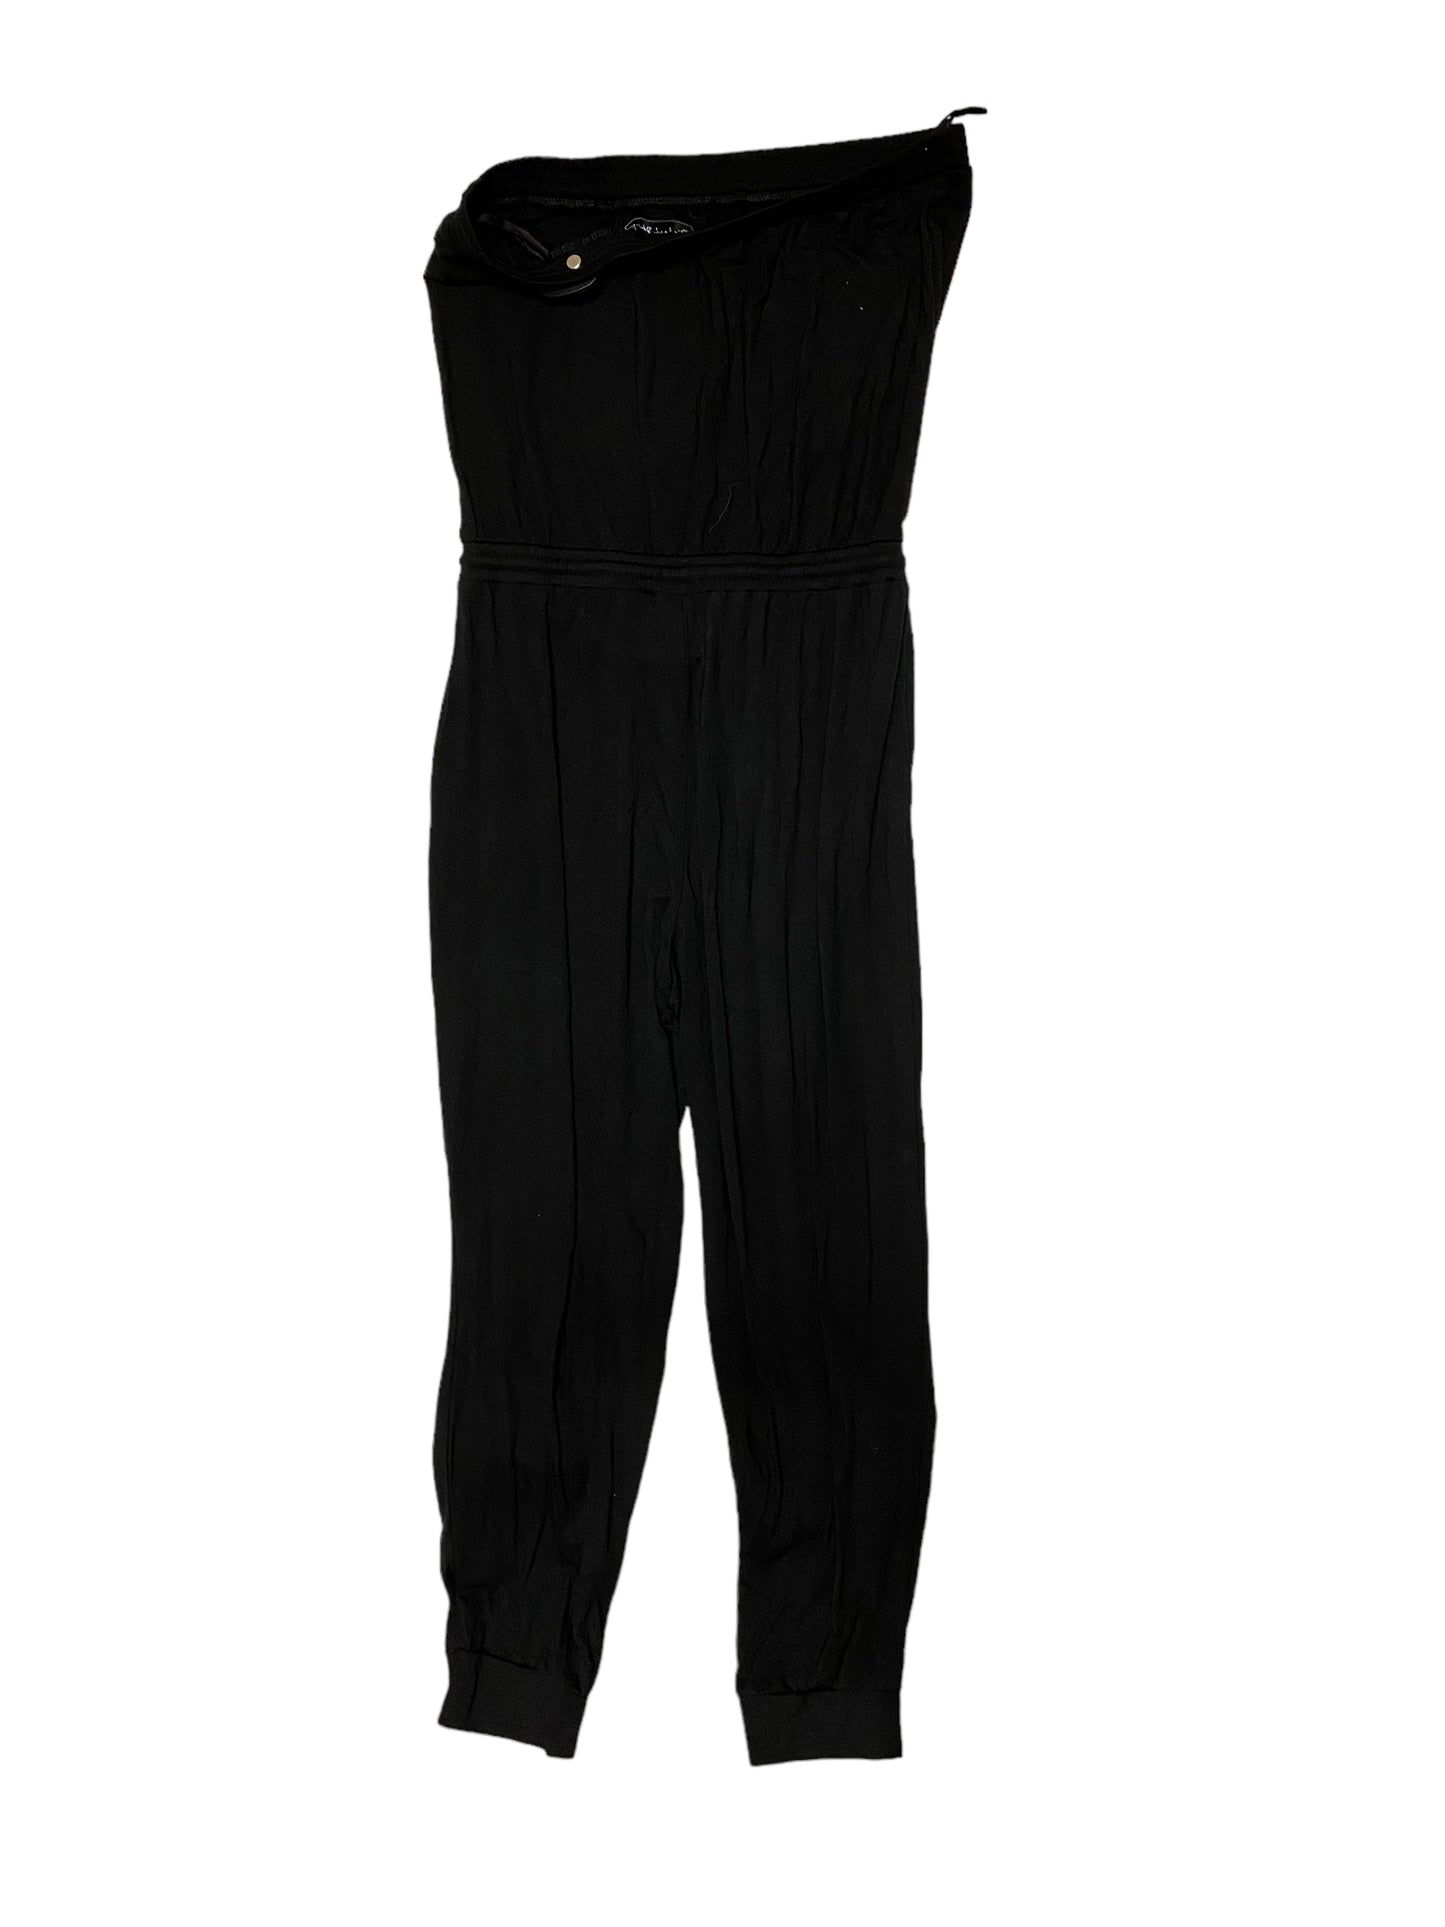 Black Jumpsuit Michael Stars, Size M